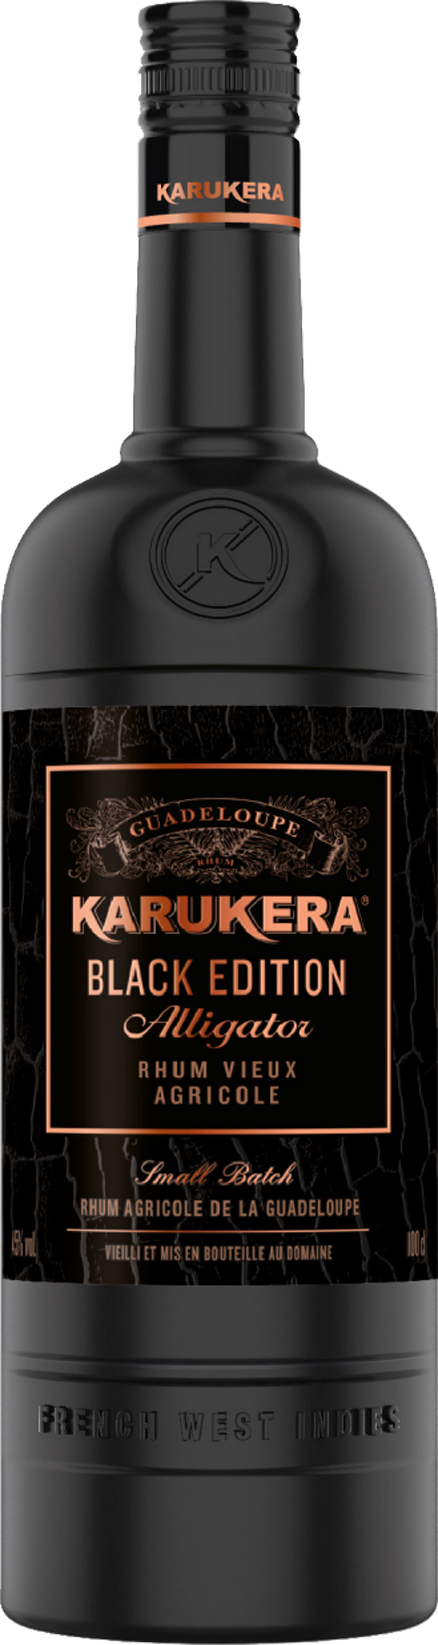 KARUKERA - Rhum Vieux Agricole - Rhum Agricole - 42% Alcool